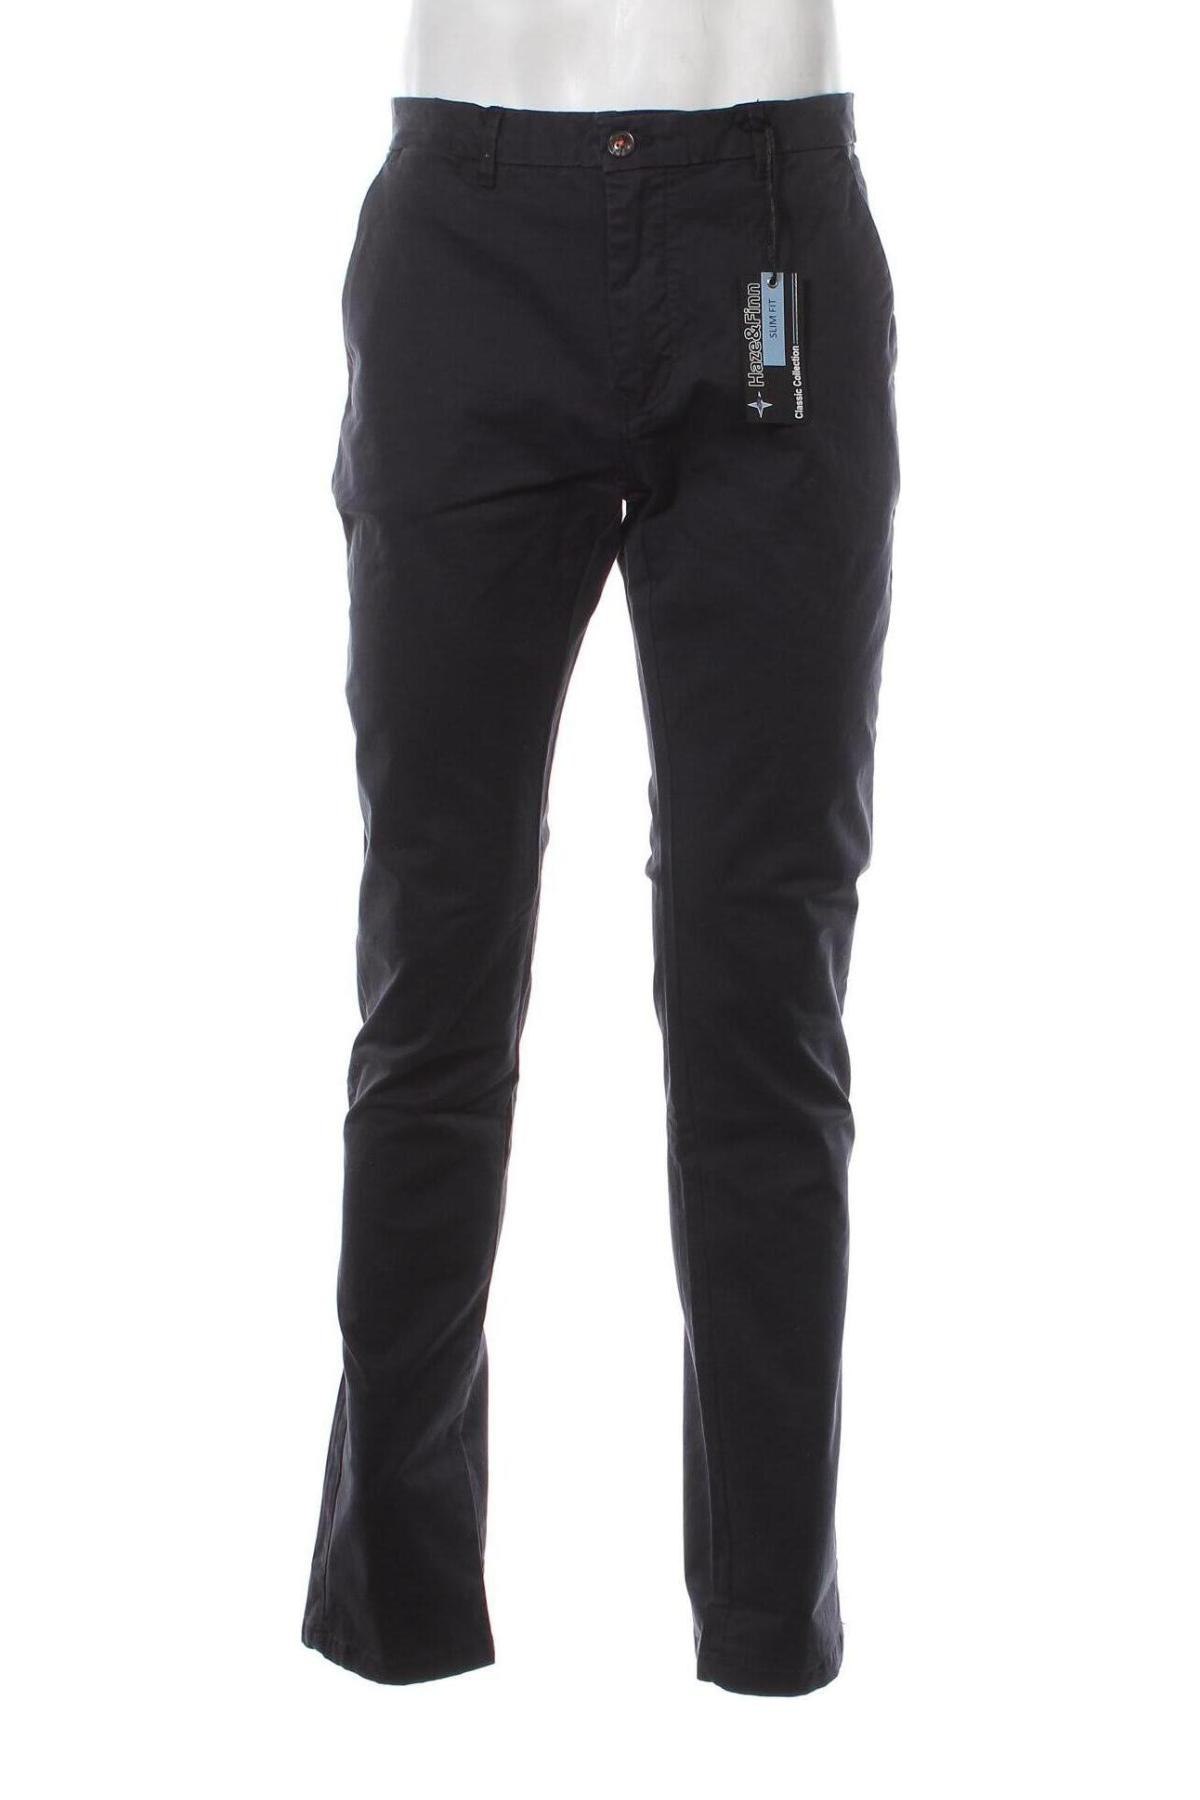 Ανδρικό παντελόνι Haze&Finn, Μέγεθος L, Χρώμα Μπλέ, Τιμή 18,84 €